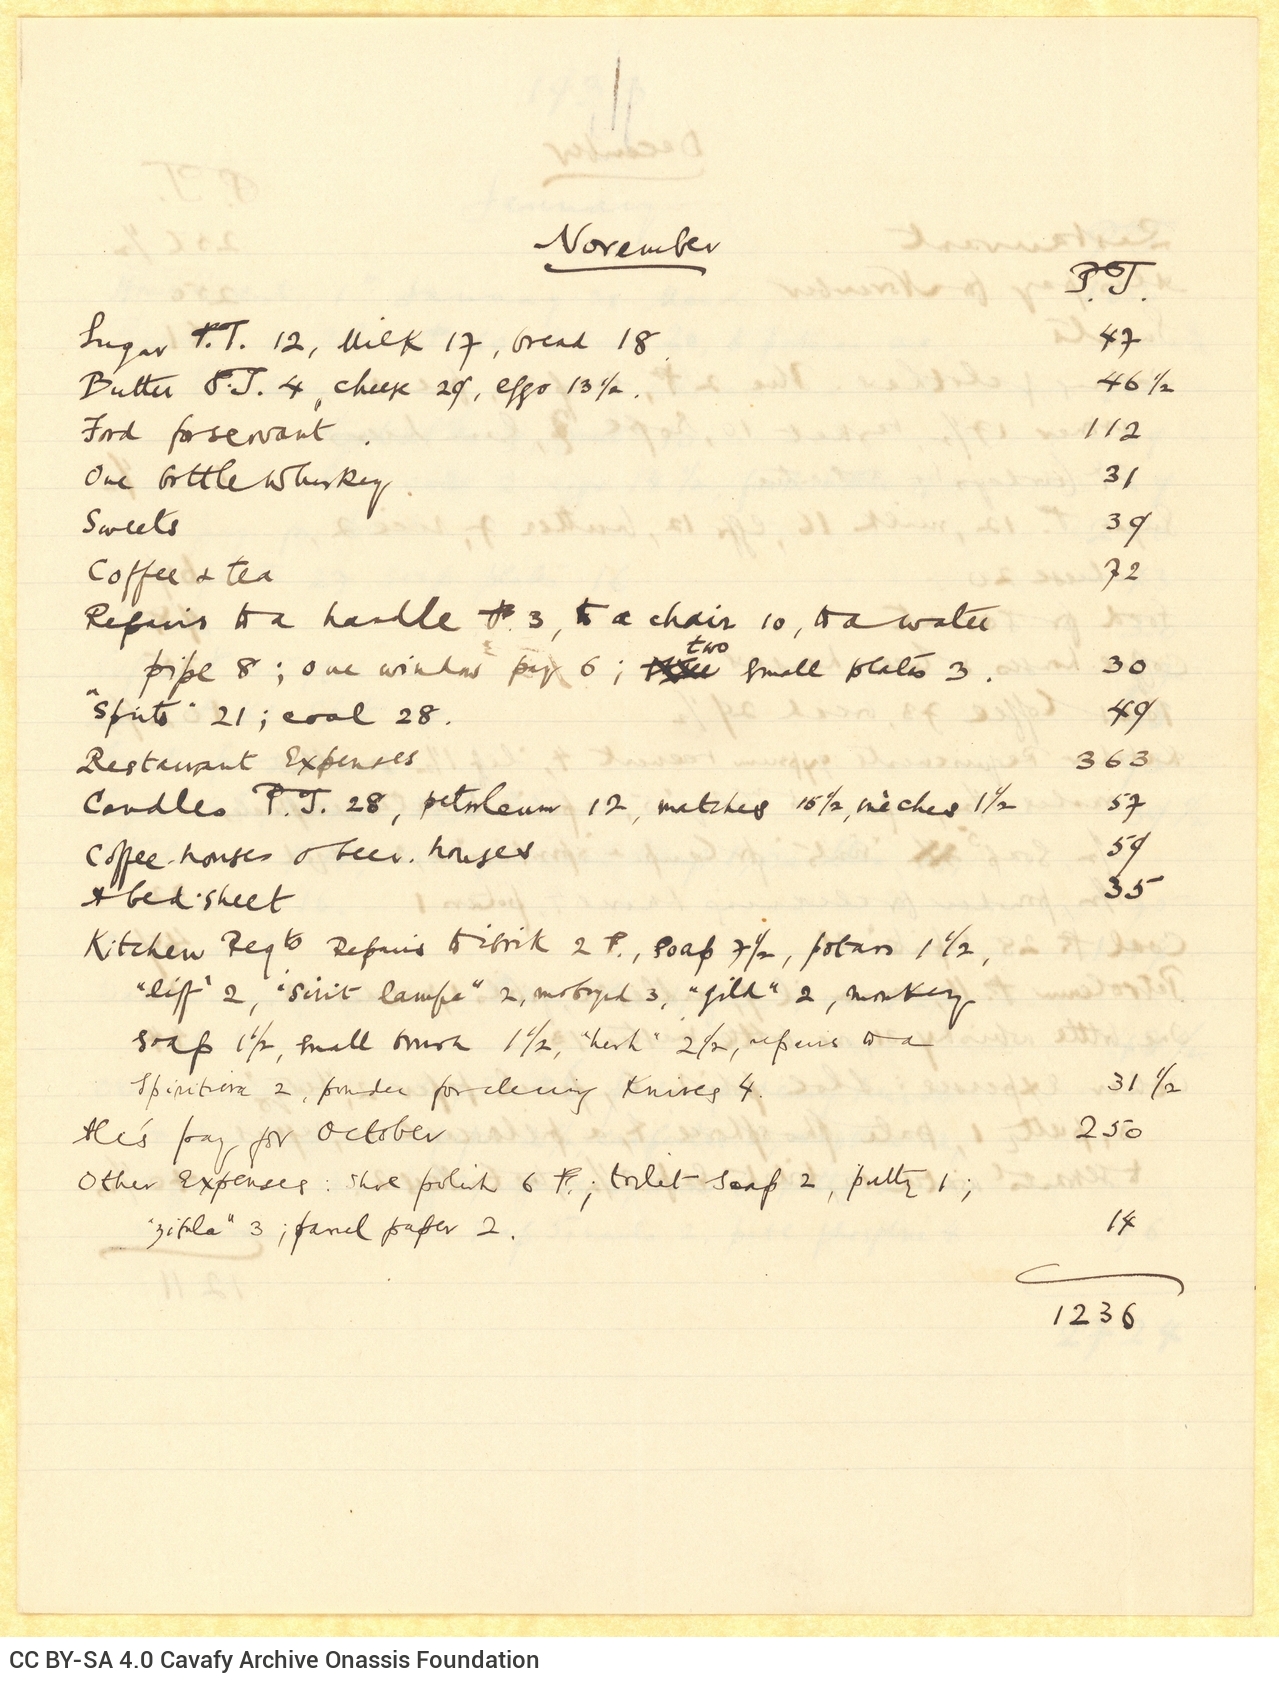 Χειρόγραφος μηνιαίος κατάλογος εξόδων των ετών 1932-1933 σε τέσσερα τε